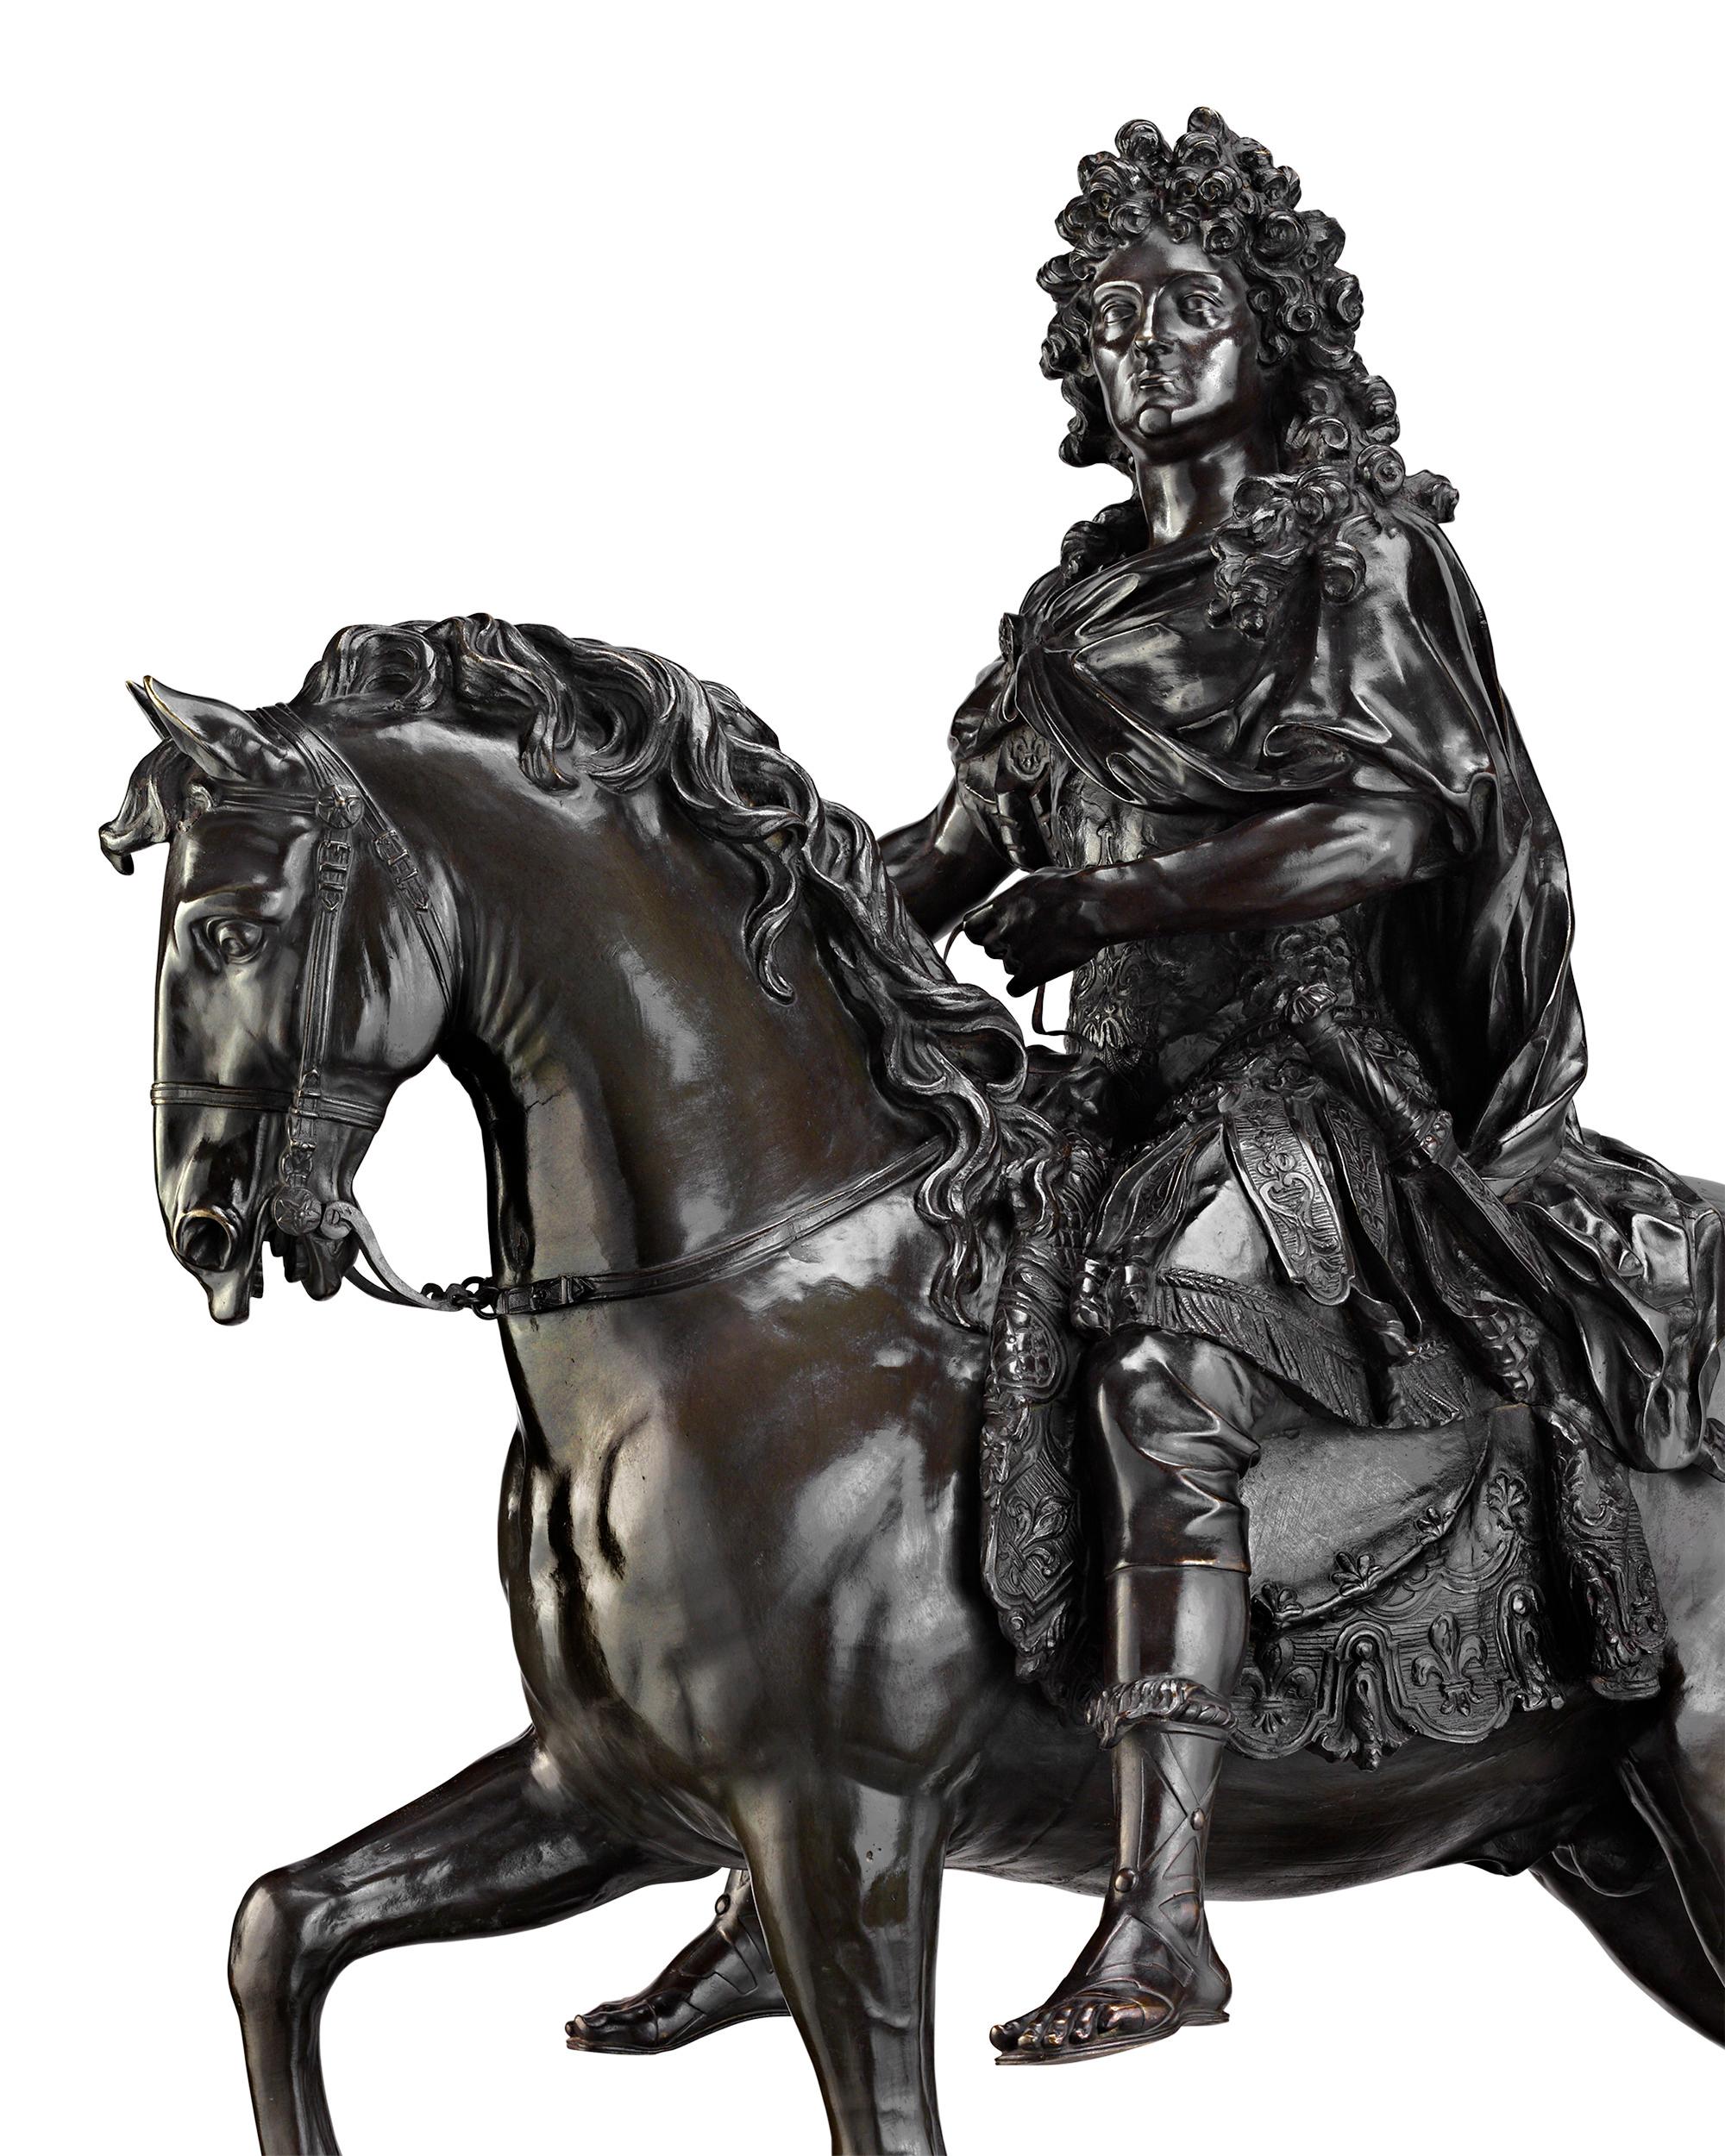 König Ludwig XIV., einer der größten Monarchen Frankreichs, sitzt auf dieser bronzenen Reiterstatue selbstbewusst auf einem tänzelnden Pferd. Das außergewöhnliche Werk ist eine Verkleinerung des Porträts des Sonnenkönigs von François Girardon, einem